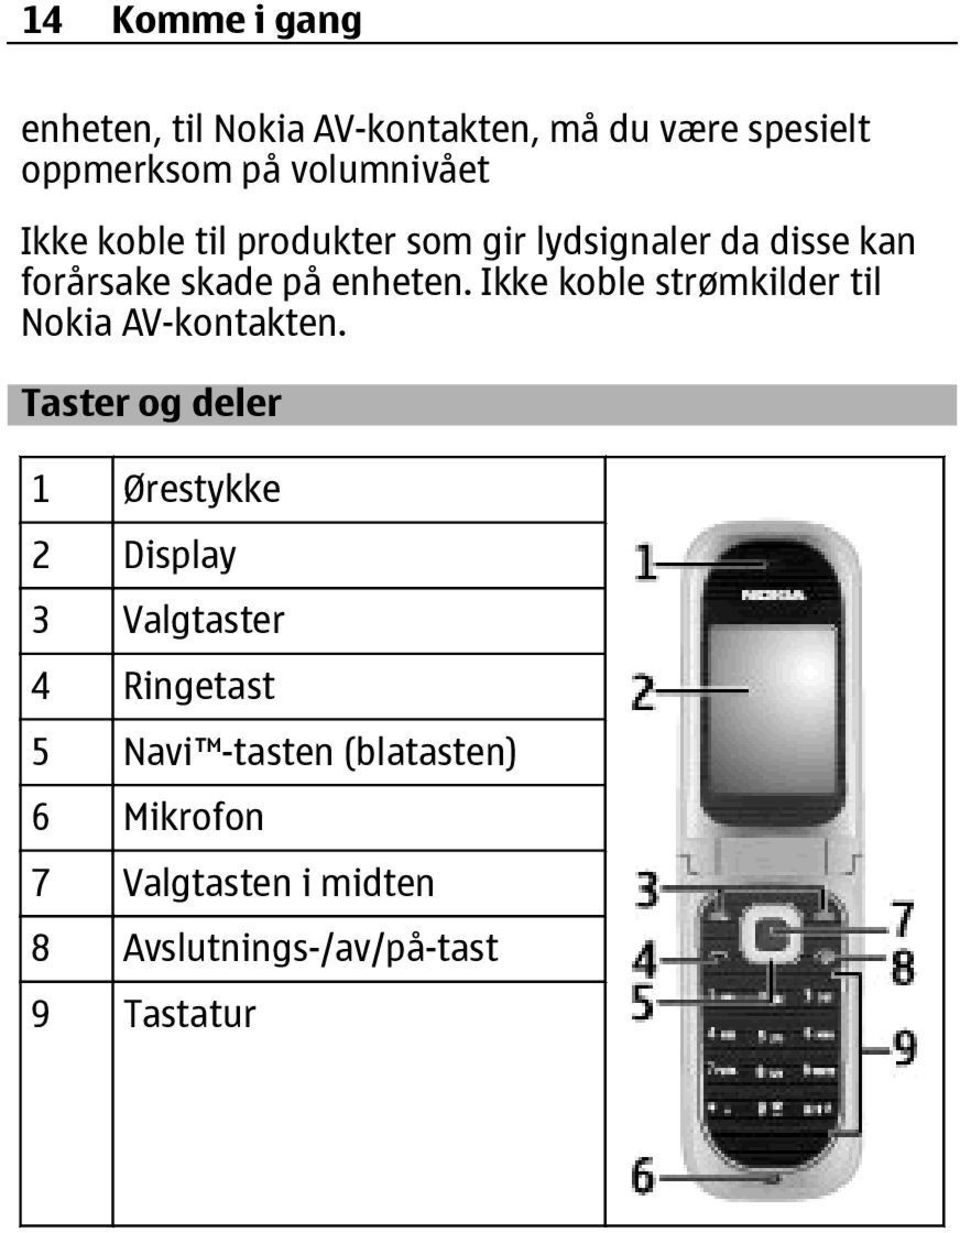 Ikke koble strømkilder til Nokia AV-kontakten.